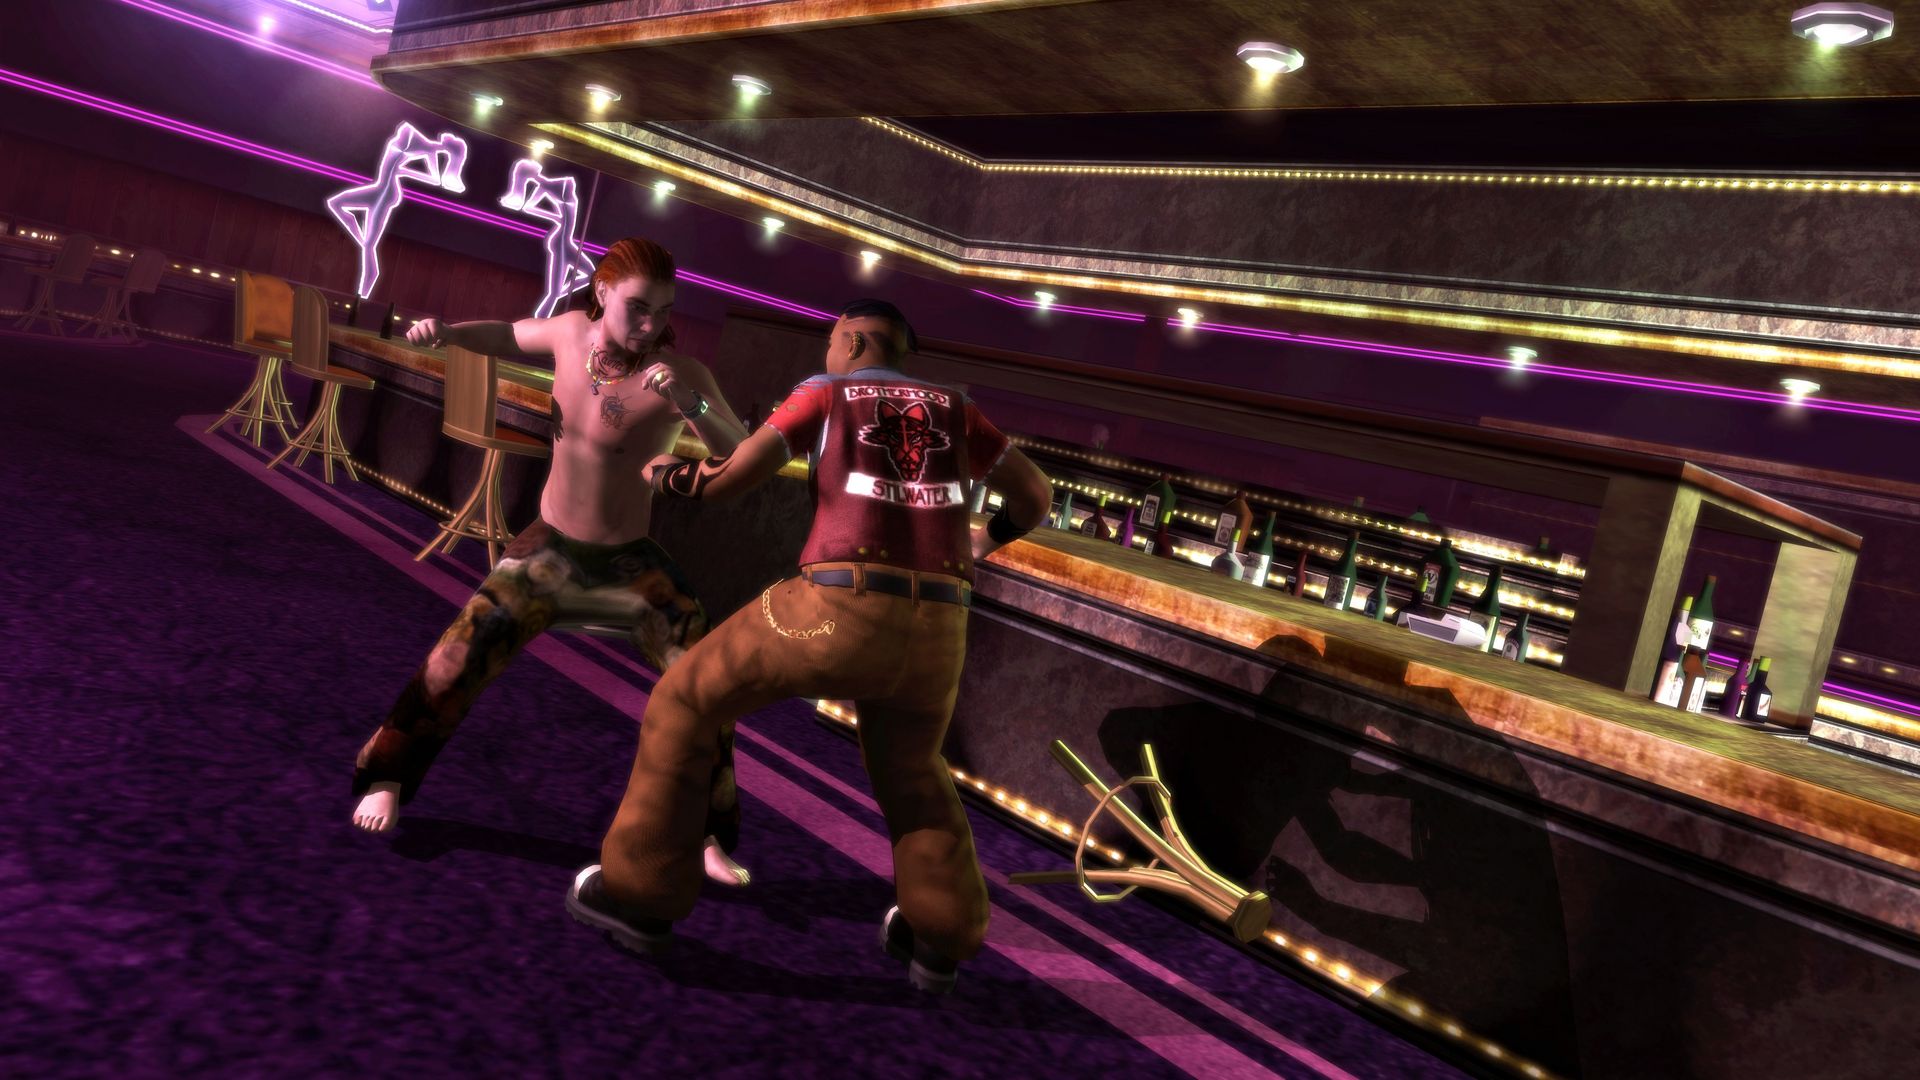 Saints Row 2 To Become Playable On PC